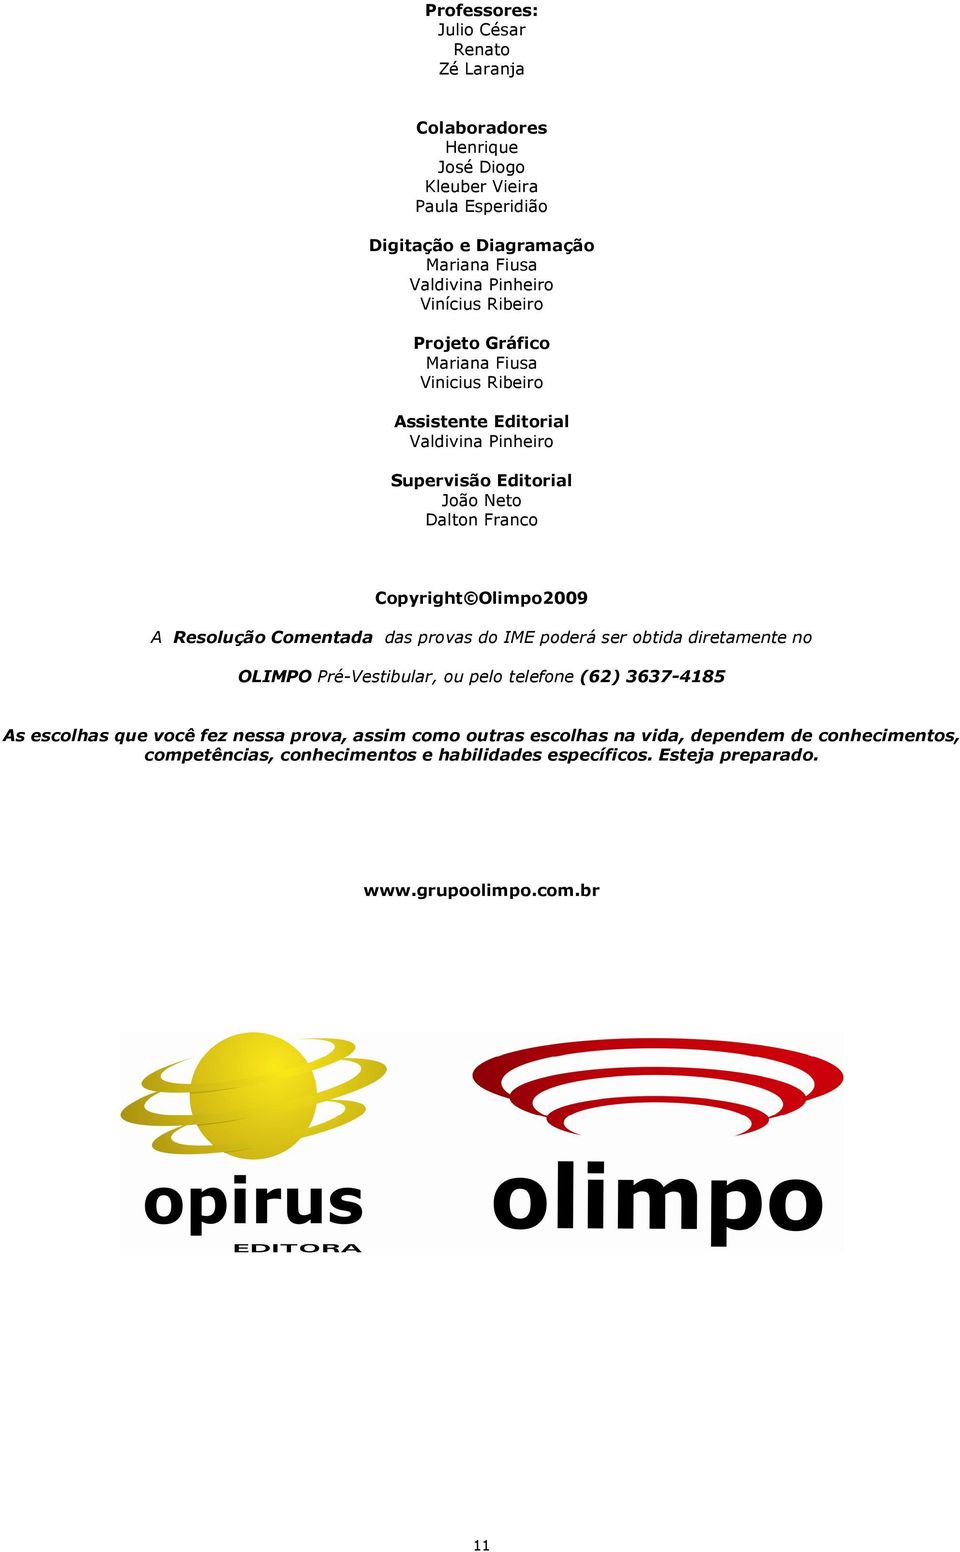 Olimpo2009 A Resolução Comentada das provas do IME poderá ser obtida diretamente no OLIMPO Pré-Vestibular, ou pelo telefone (62) 3637-4185 As escolhas que você fez